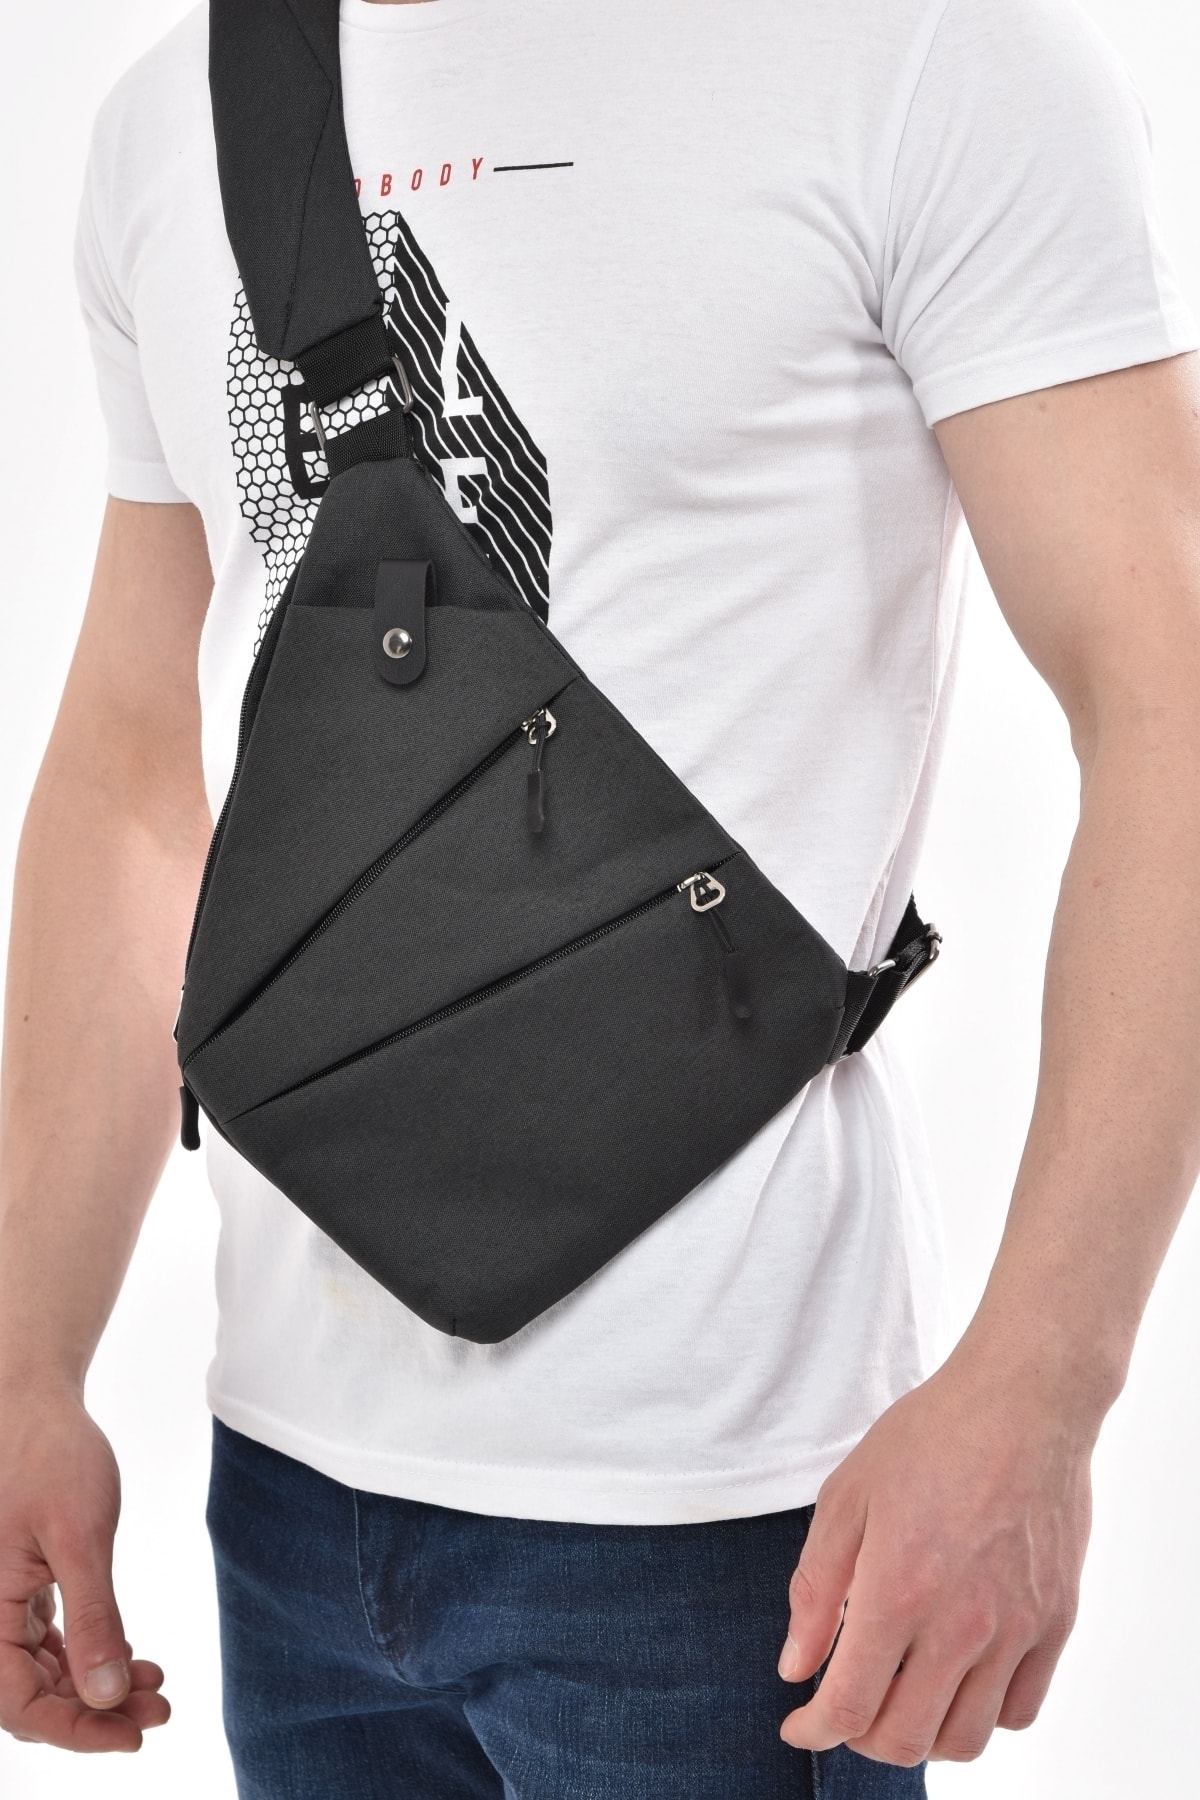 AVCA Unisex Çapraz Askılı Çanta Telefon Bölmeli Göğüs Çanta Ince Tek Kol Omuz Çanta Günlük Bodybag